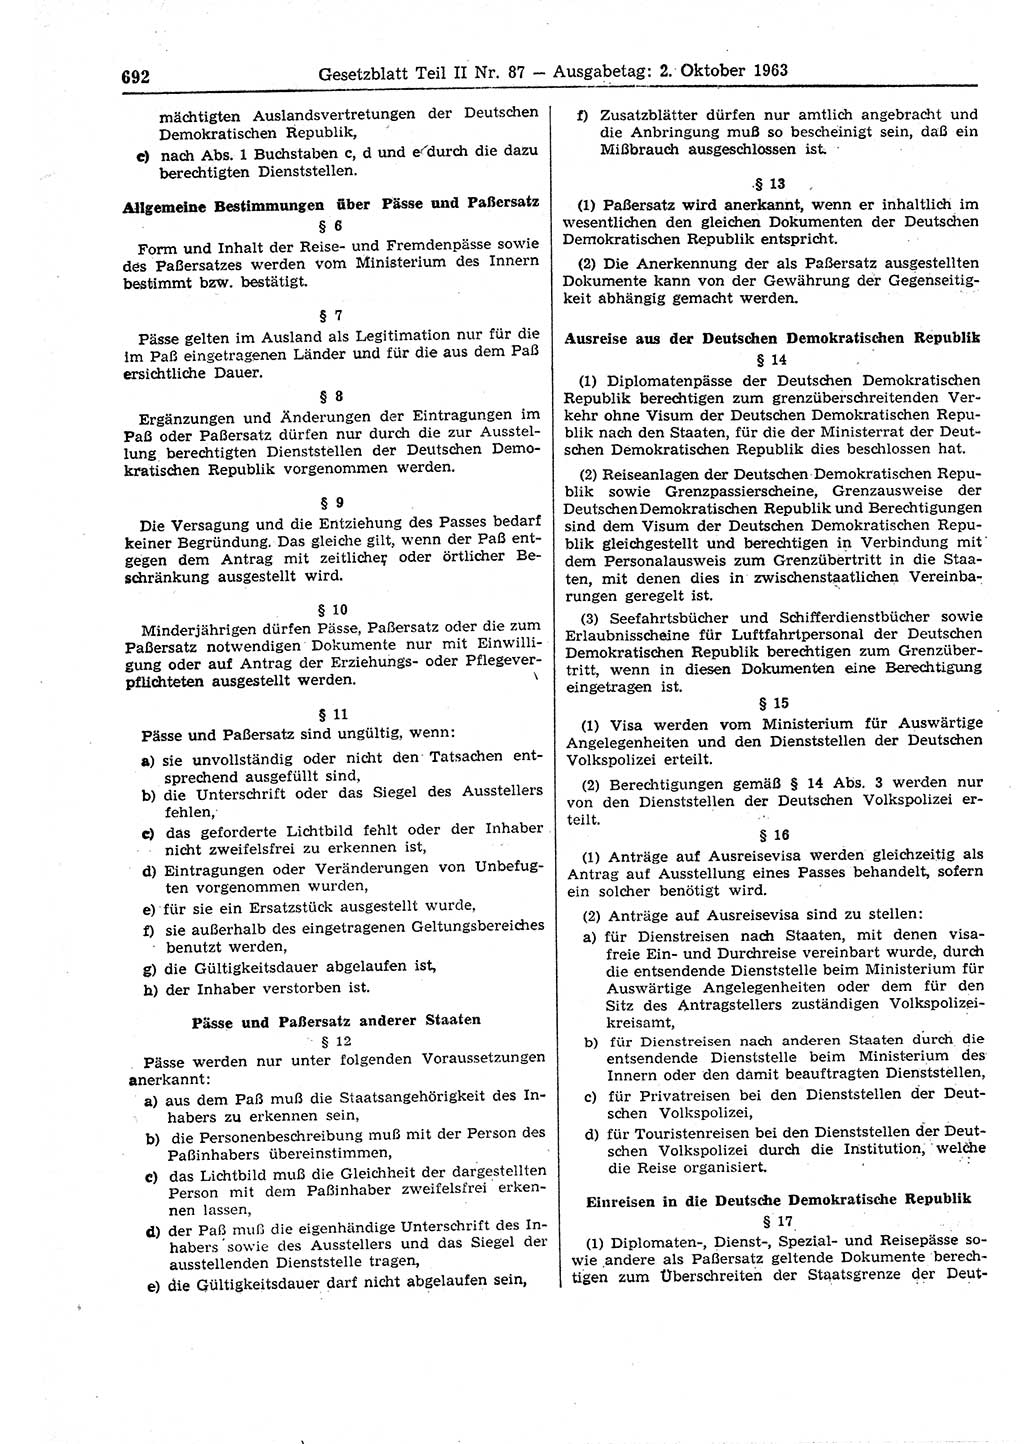 Gesetzblatt (GBl.) der Deutschen Demokratischen Republik (DDR) Teil ⅠⅠ 1963, Seite 692 (GBl. DDR ⅠⅠ 1963, S. 692)